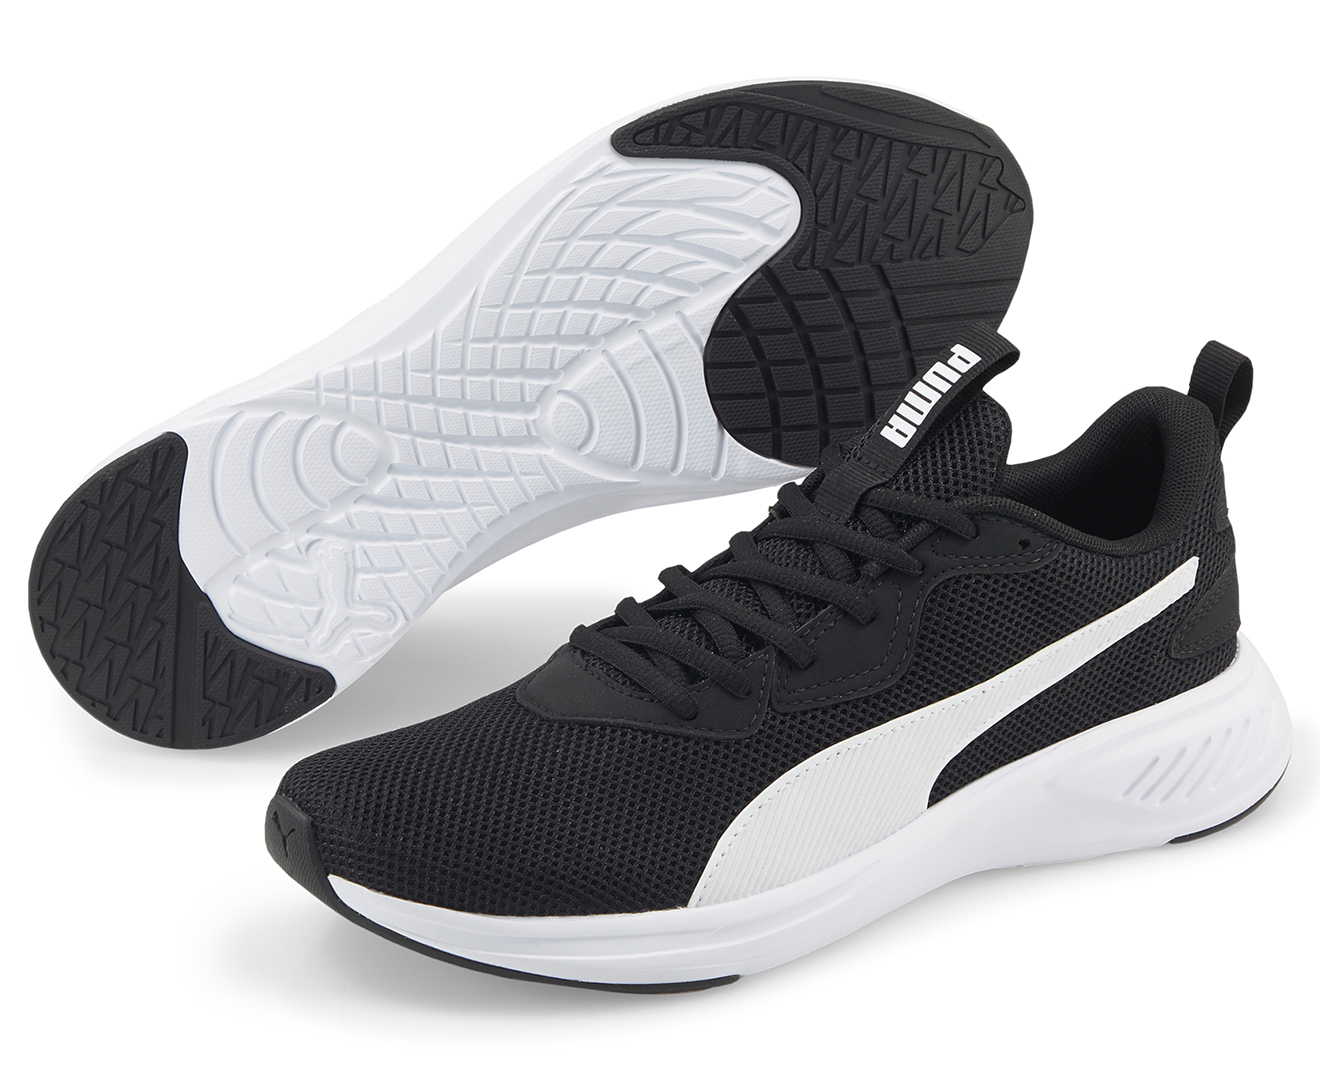 Puma Men's Incinerate Running Shoes - Puma Black/Puma White | Catch.com.au